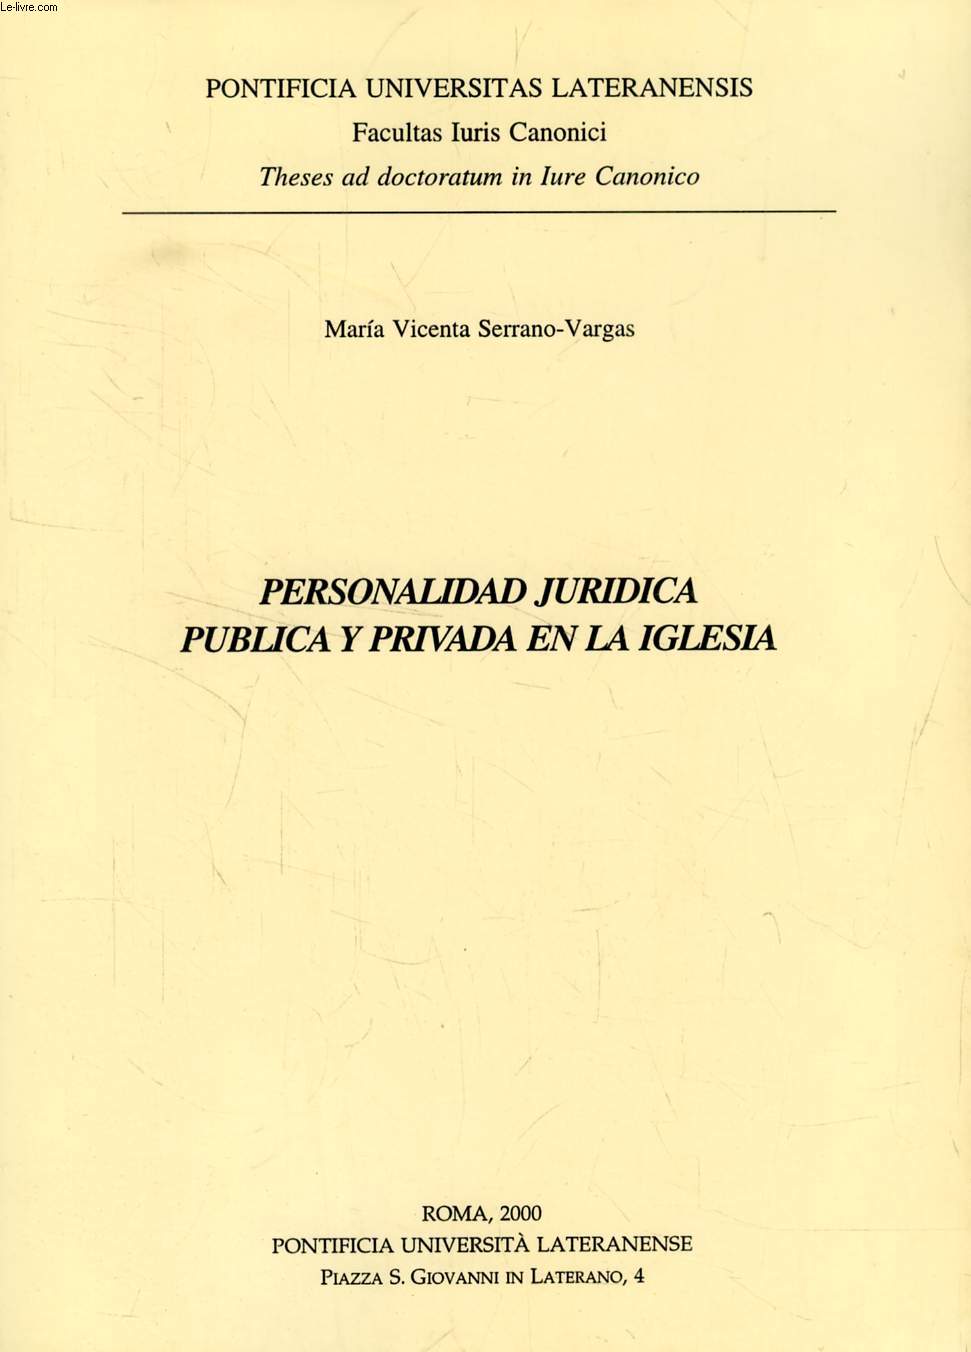 PERSONALIDAD JURIDICA PUBLICA Y PRIVADA EN LA IGLESIA (THESIS)